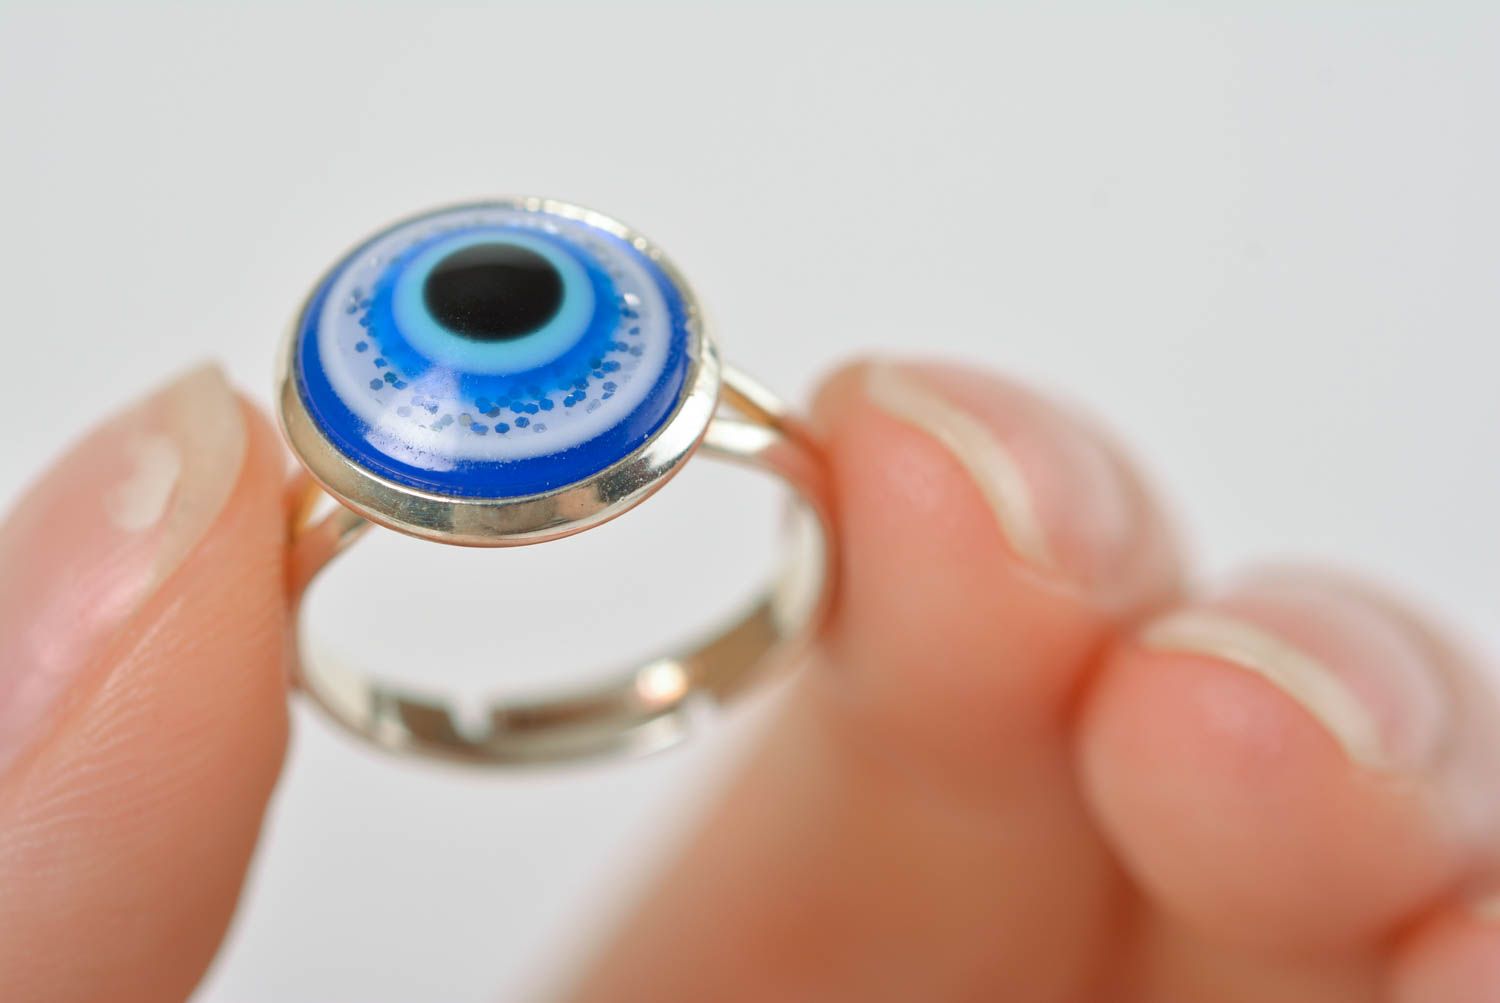 Кольцо ручной работы кольцо из эпоксидной смолы модное кольцо голубое глаз фото 5